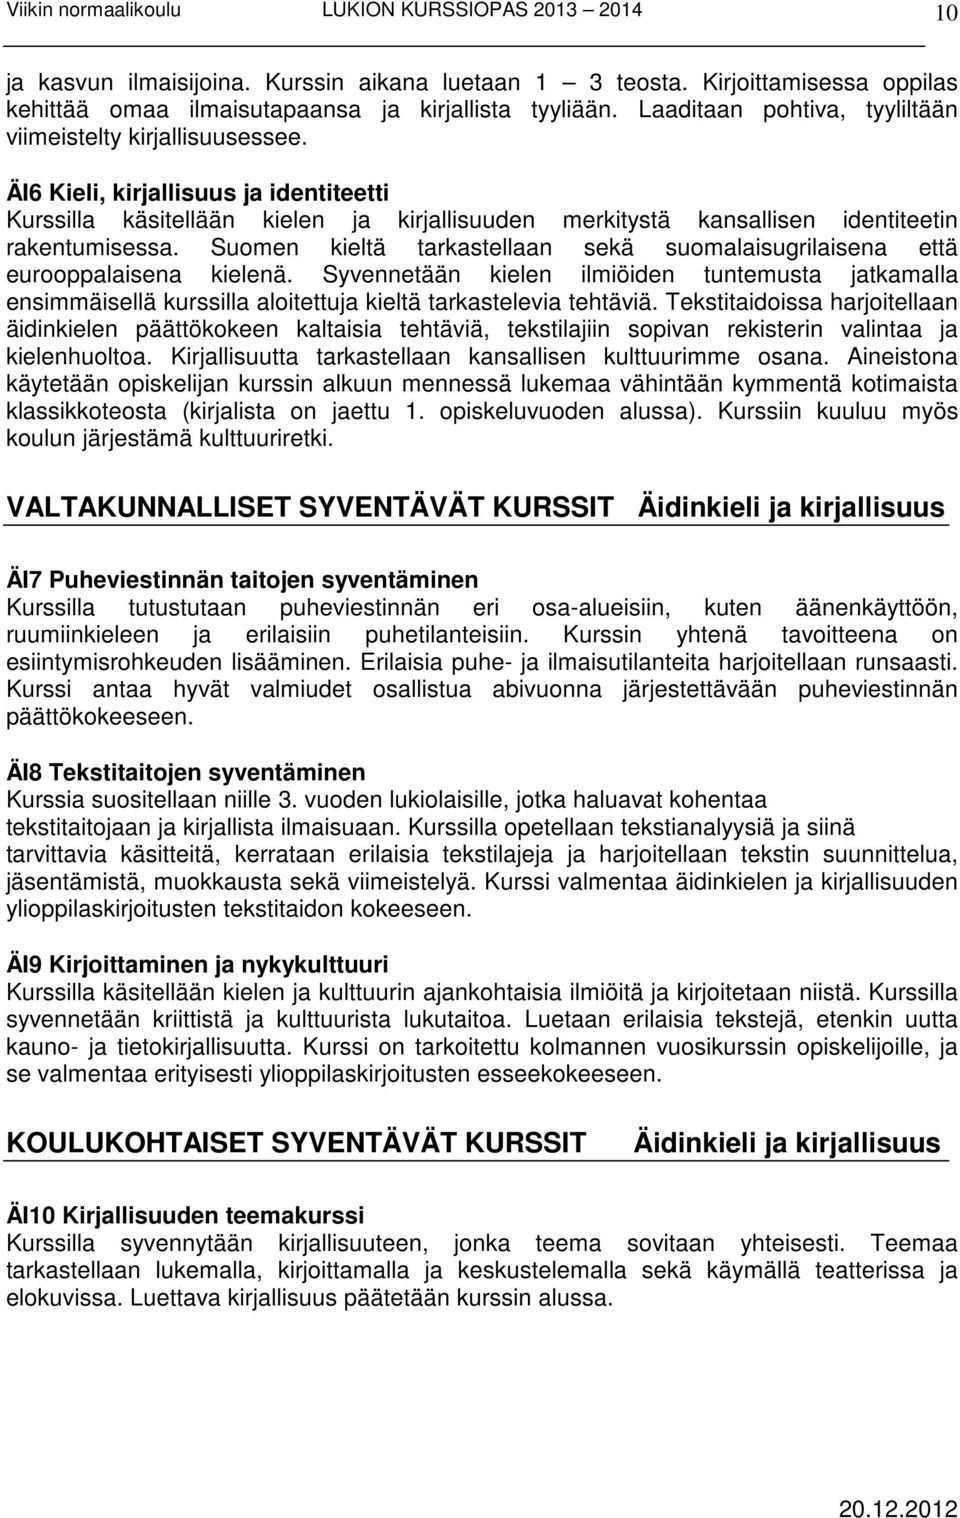 Suomen kieltä tarkastellaan sekä suomalaisugrilaisena että eurooppalaisena kielenä.